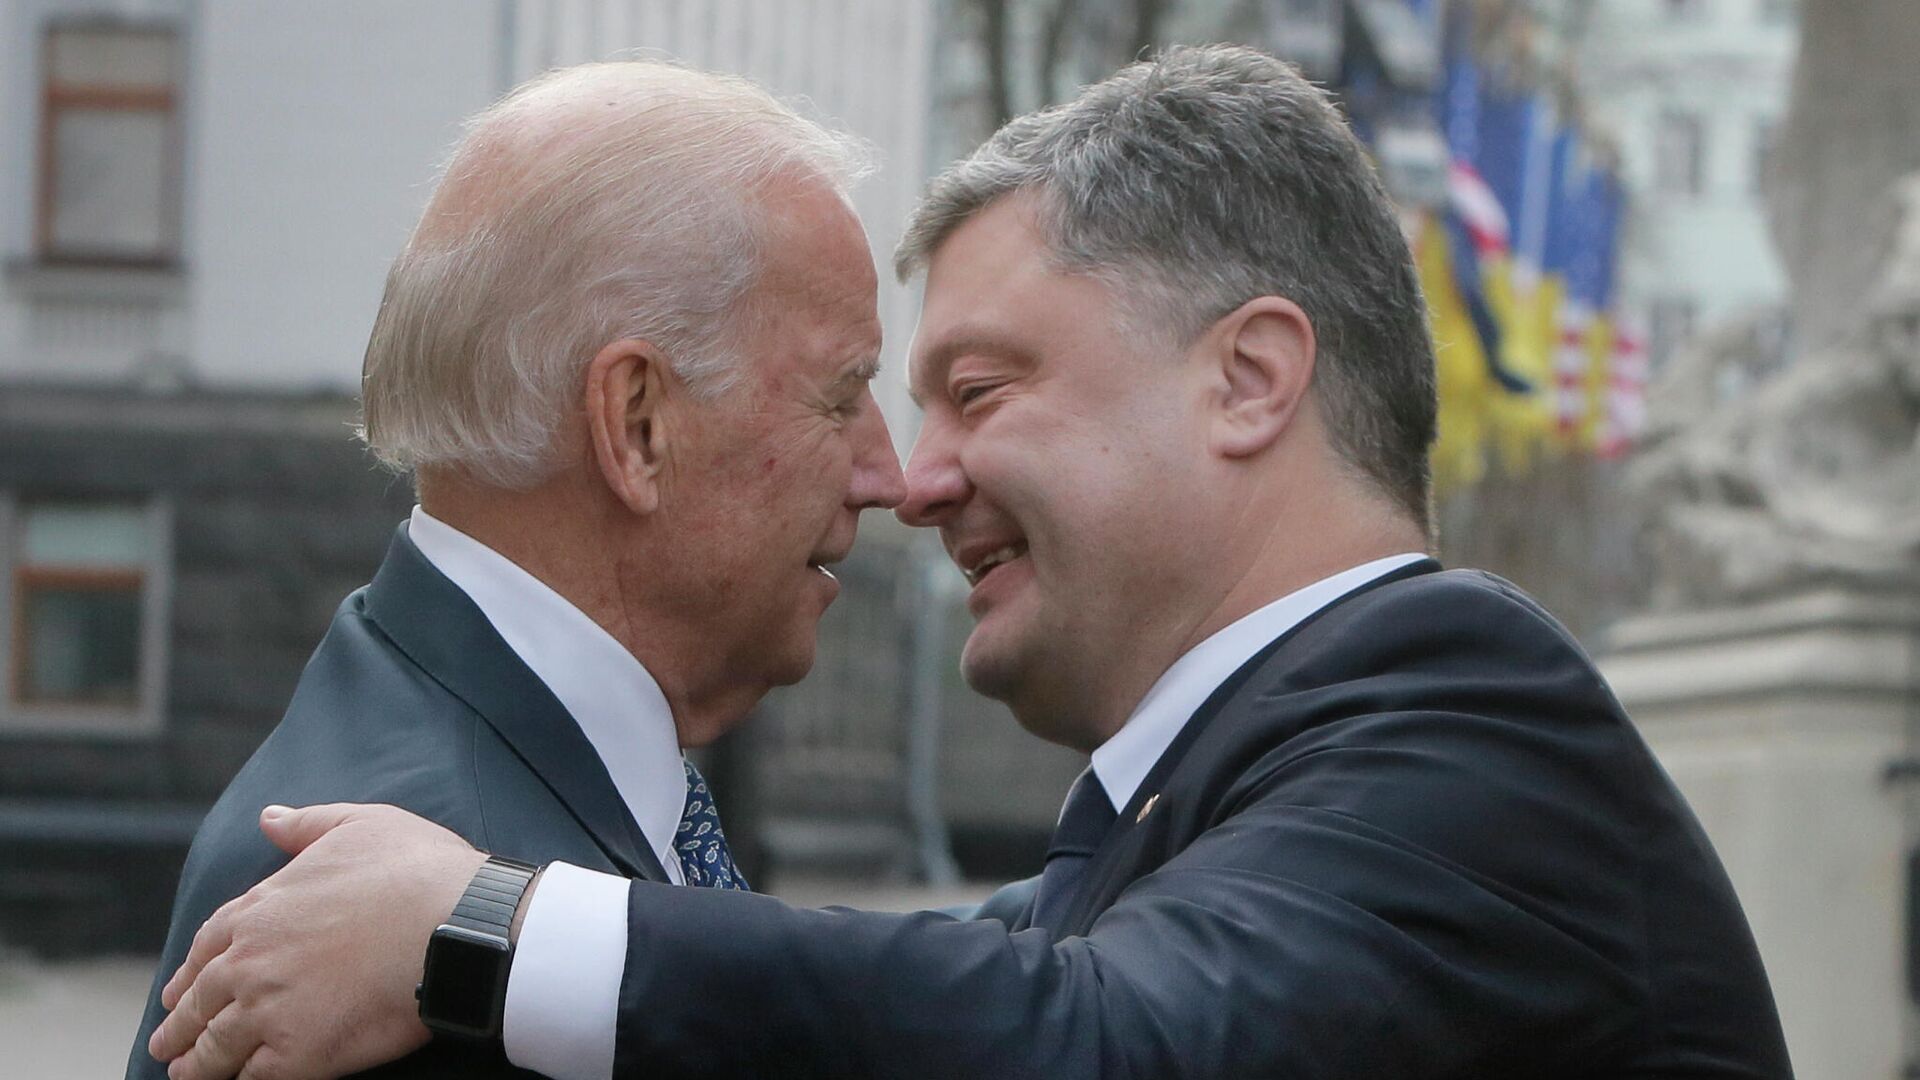 Президент Украины Петр Порошенко и вице-президент США Джо Байден во время встречи в Киеве, 7 декабря 2015 года - РИА Новости, 1920, 16.09.2020